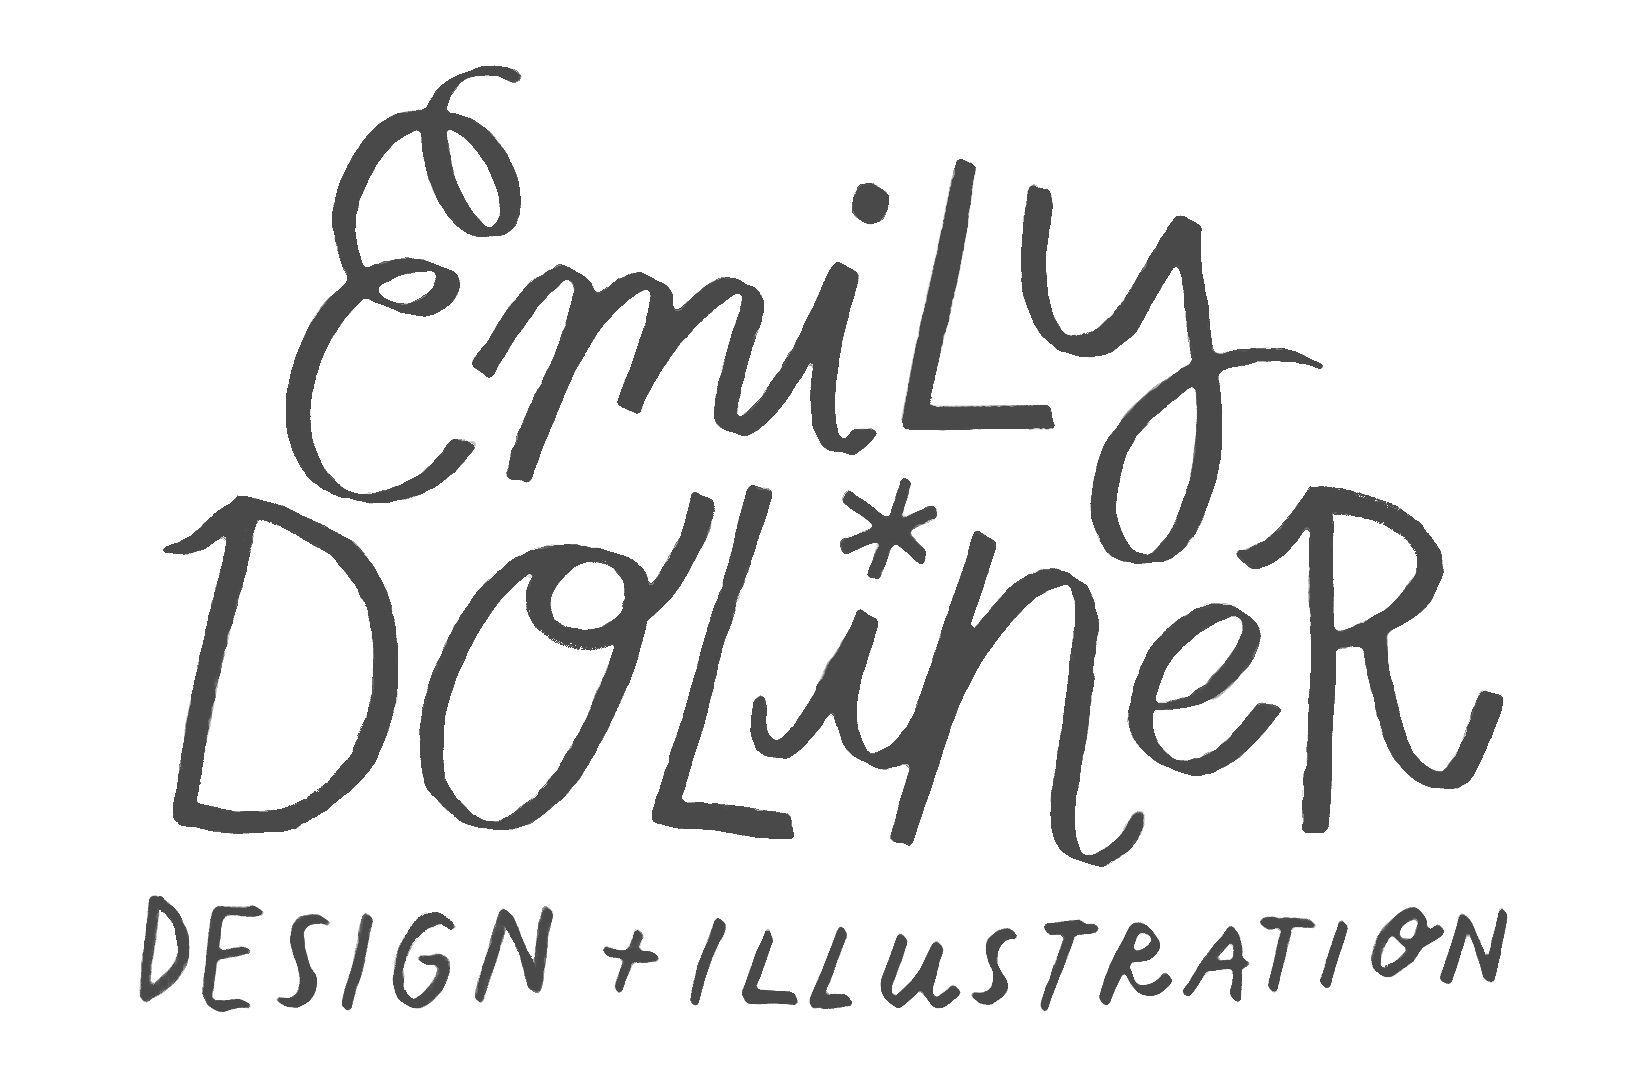 Emily Doliner Surface Design + Illustration